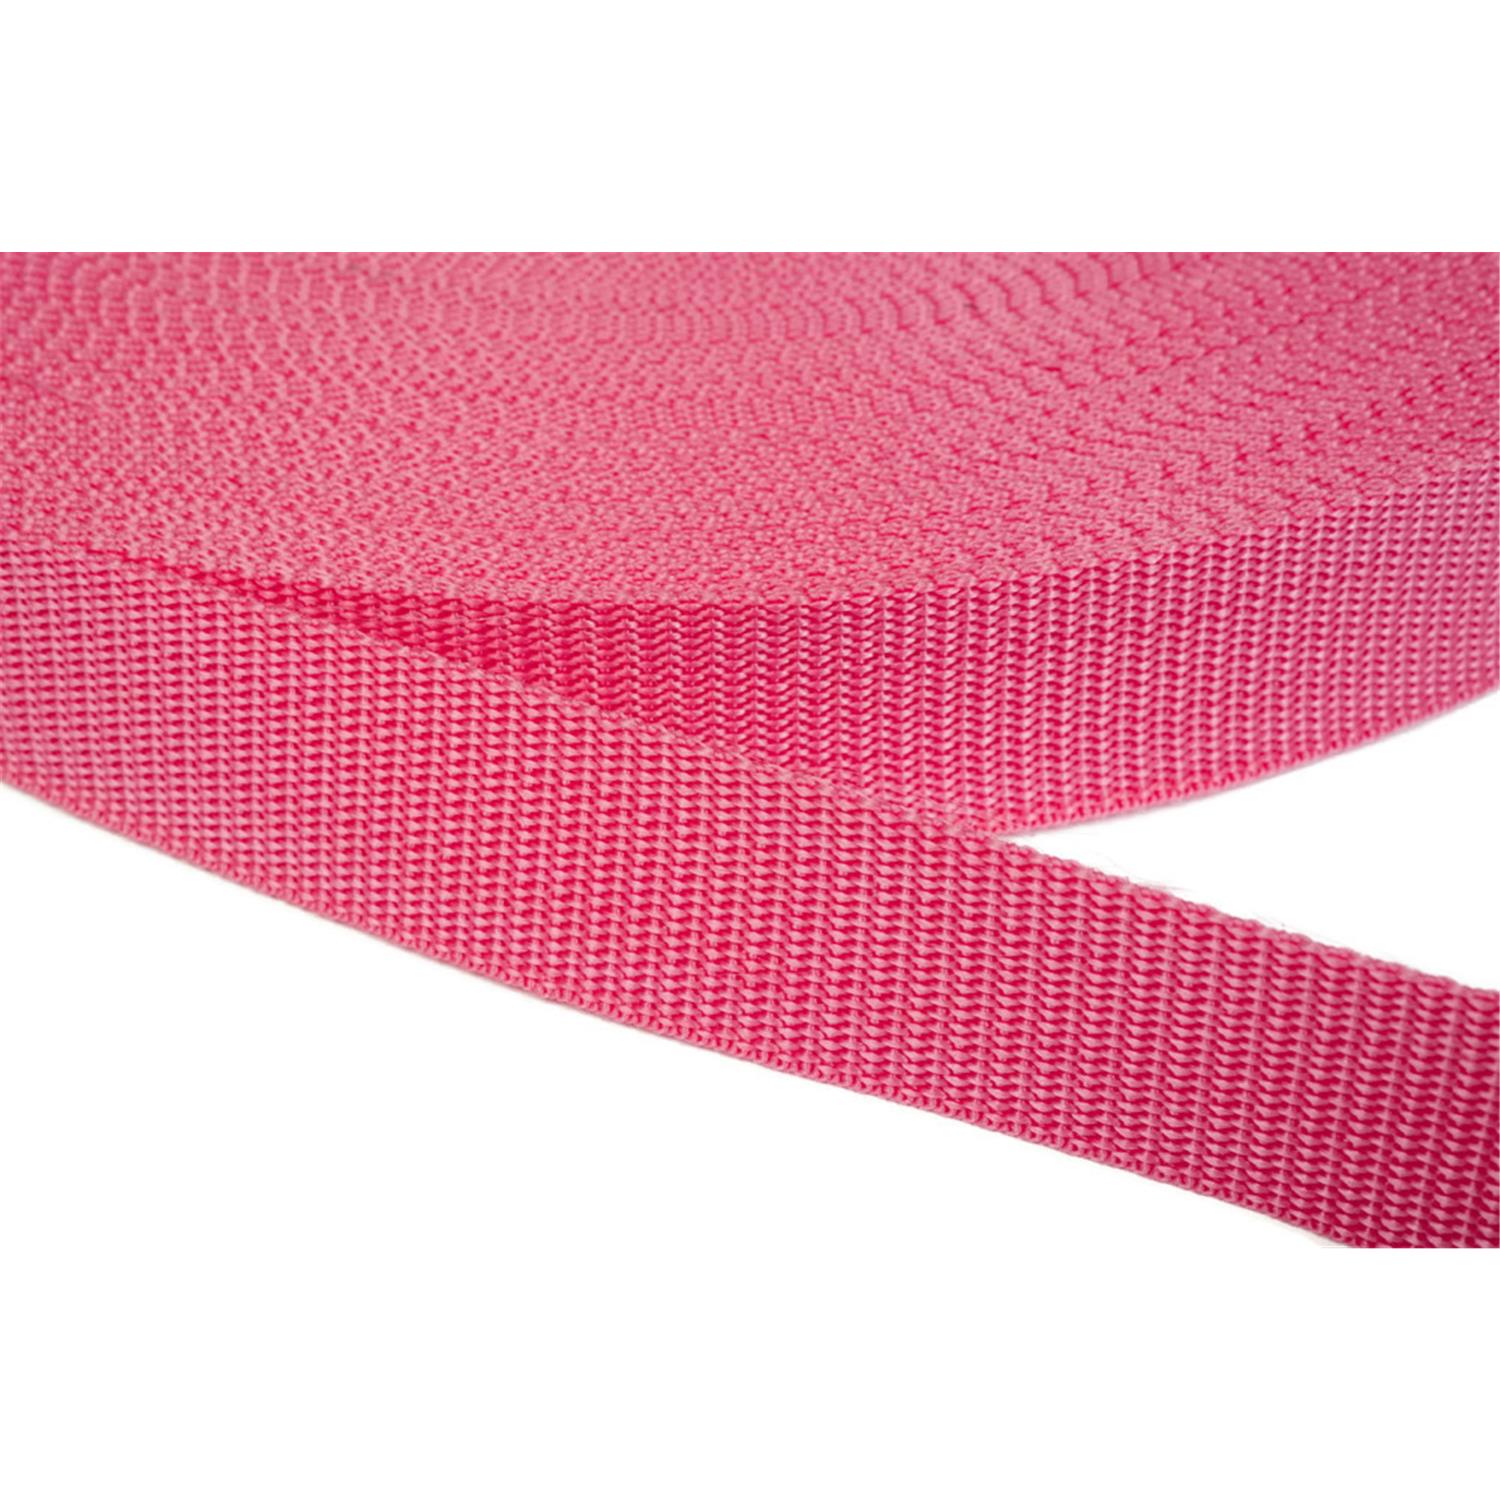 Gurtband 10mm breit aus Polypropylen in 41 Farben 13 - pink 12 Meter